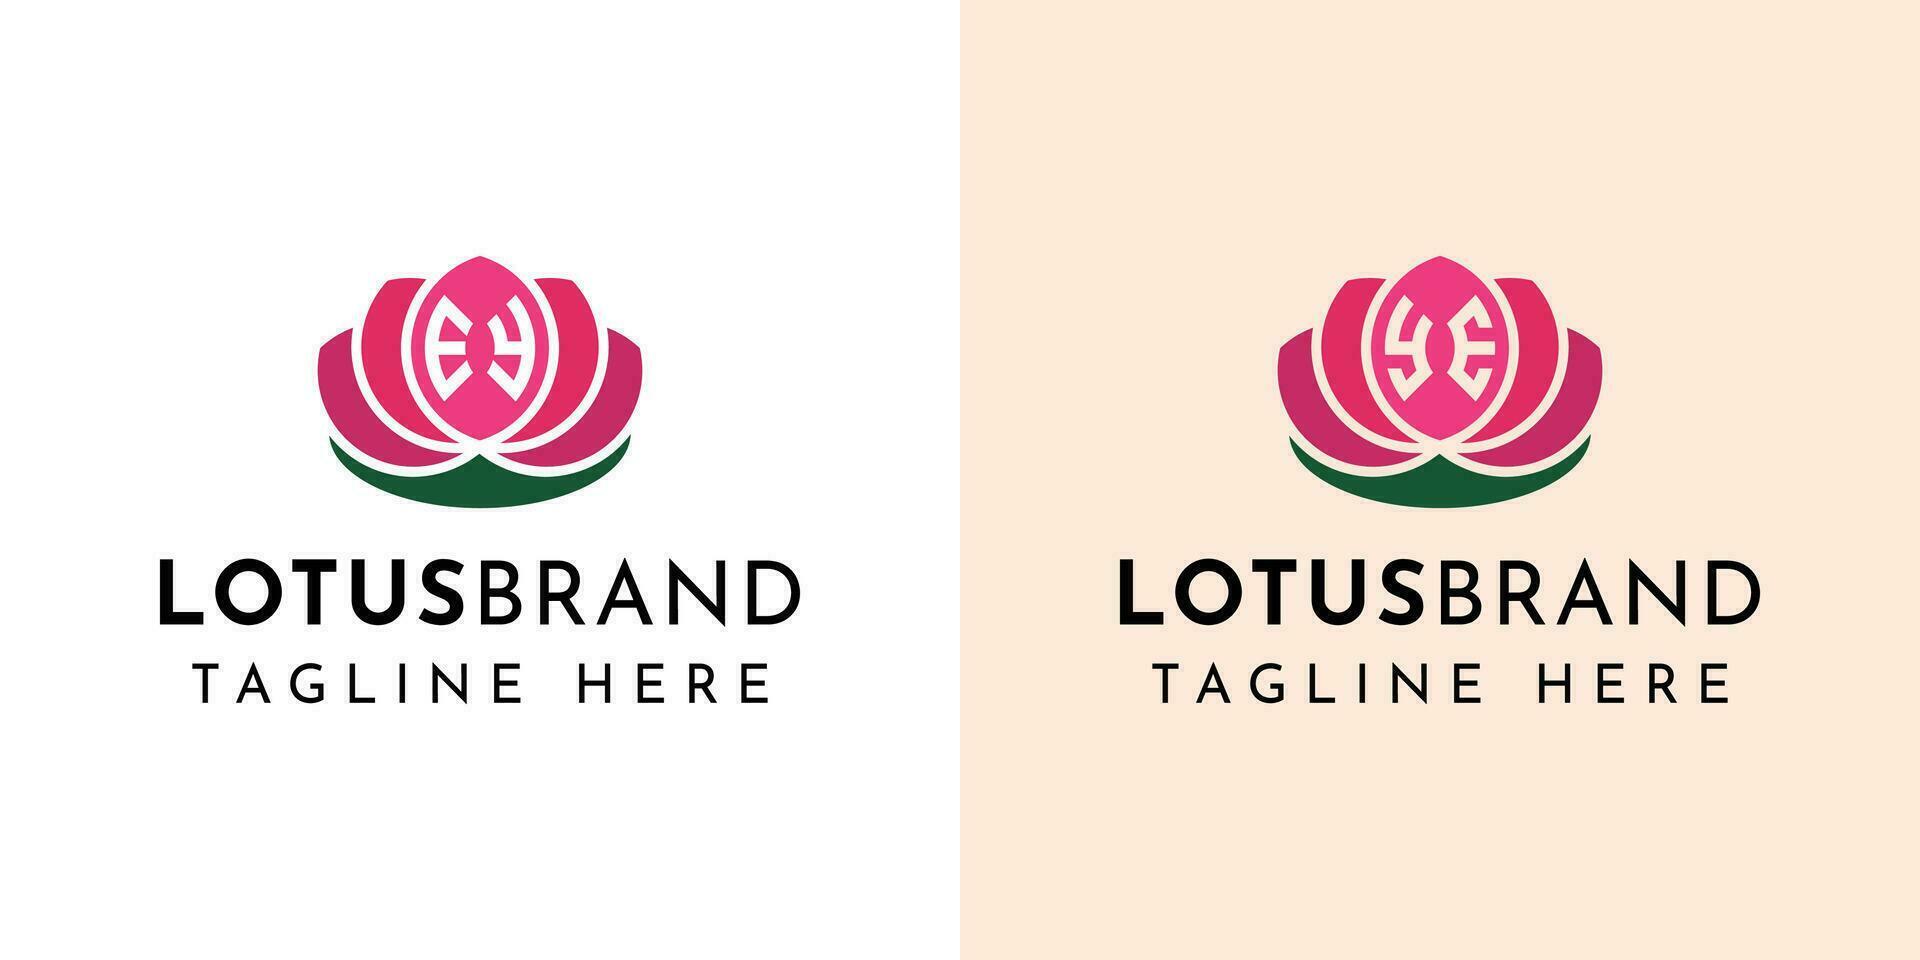 carta ey e vós lótus logotipo definir, adequado para o negócio relacionado para lótus flores com ey ou vós iniciais. vetor